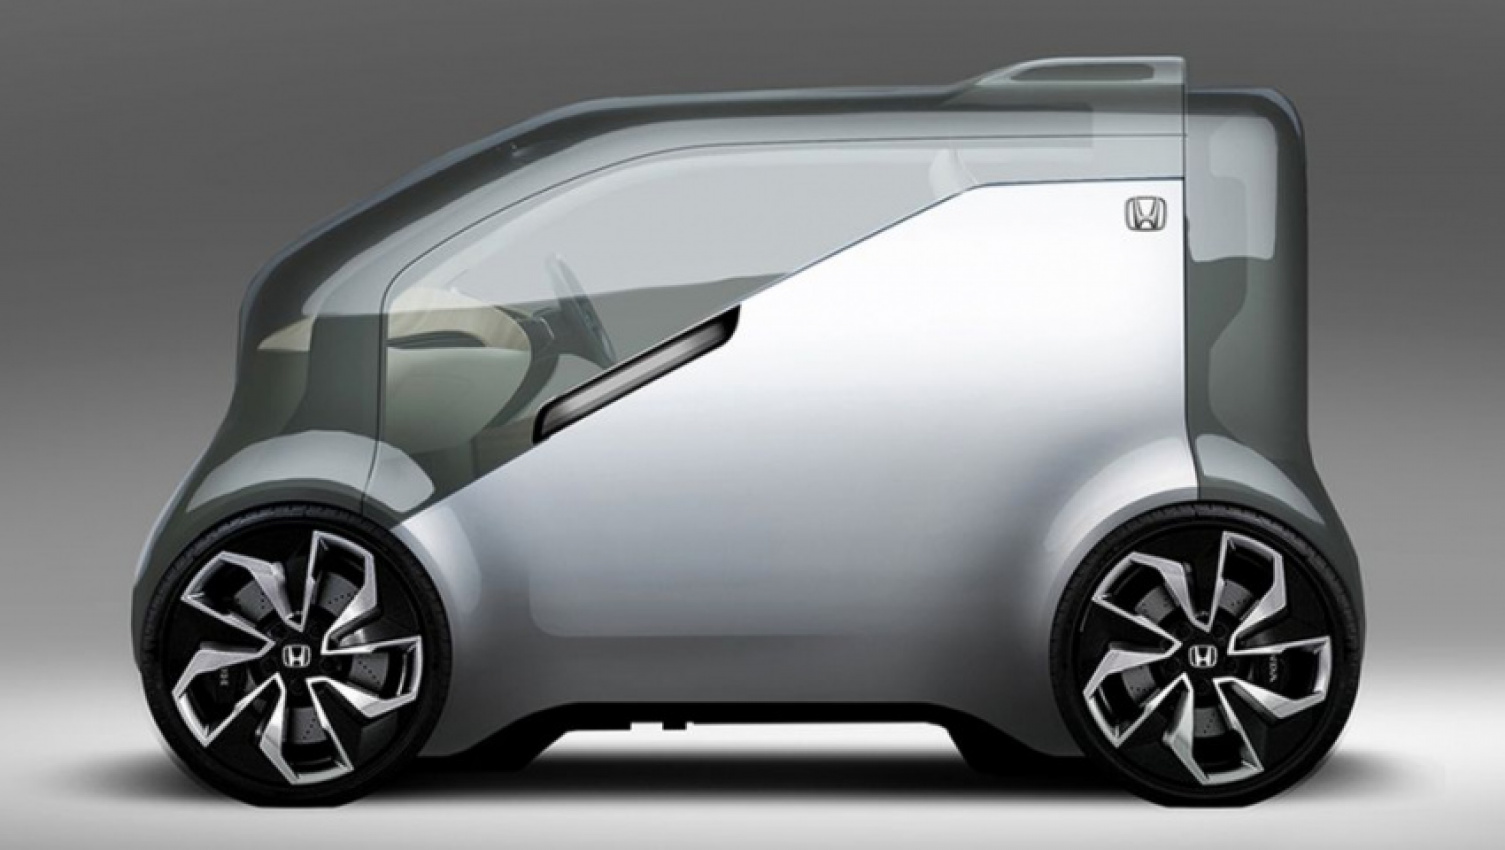 autos, cars, honda, autos honda, honda to focus on self-driving cars, robotics, evs through 2030